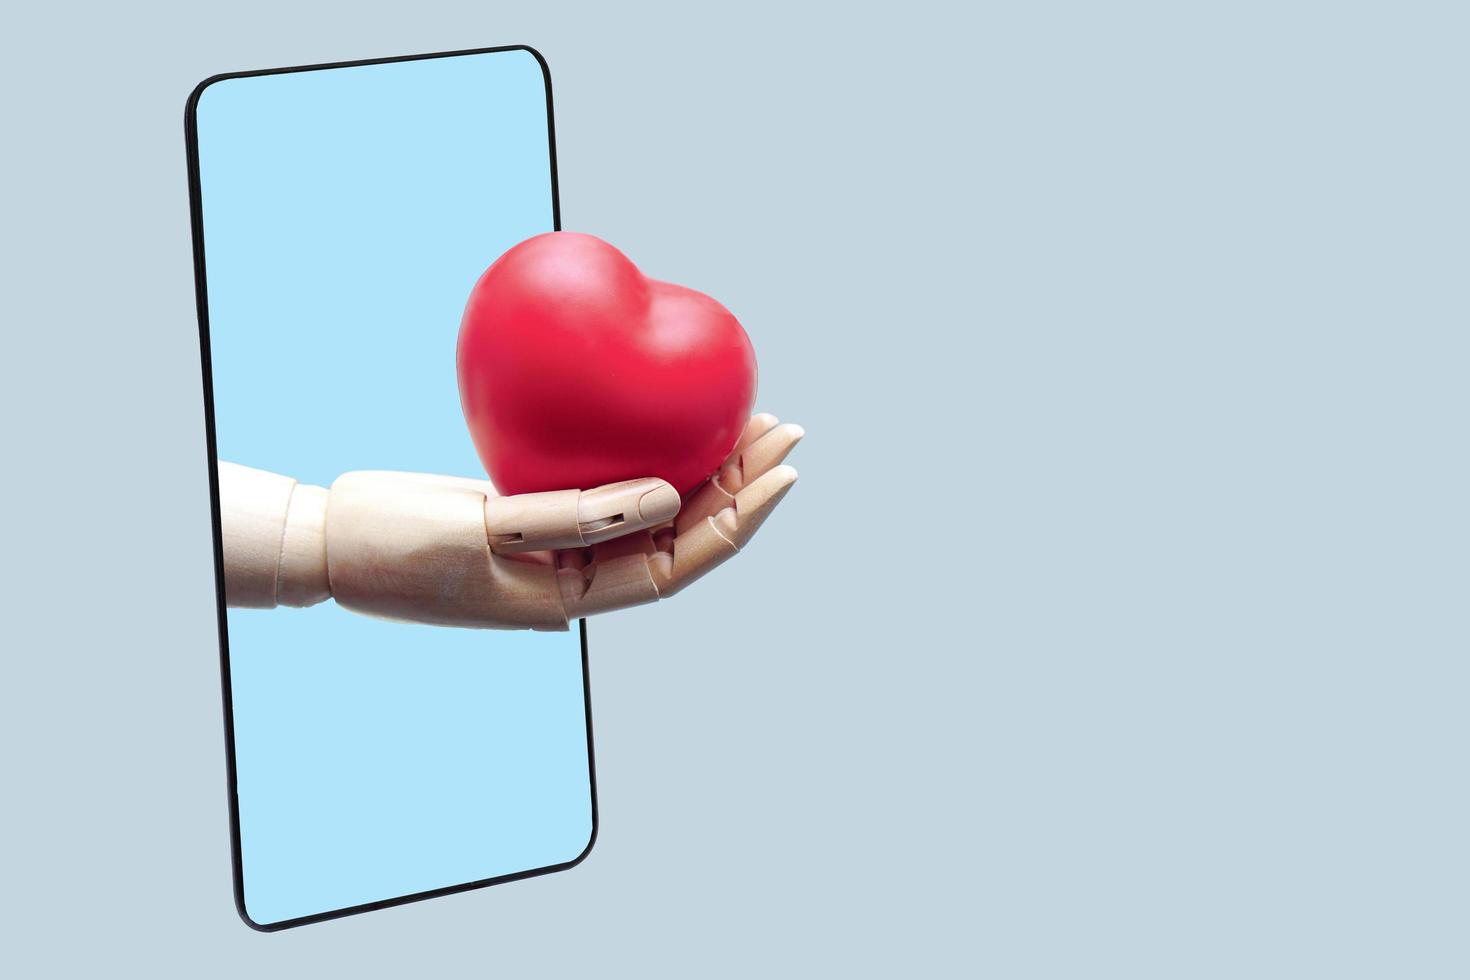 la main du robot donne un coeur rouge à partir d'un smartphone noir, connecté à la communication technologique en ligne. technologie médicale et concept futur. photo